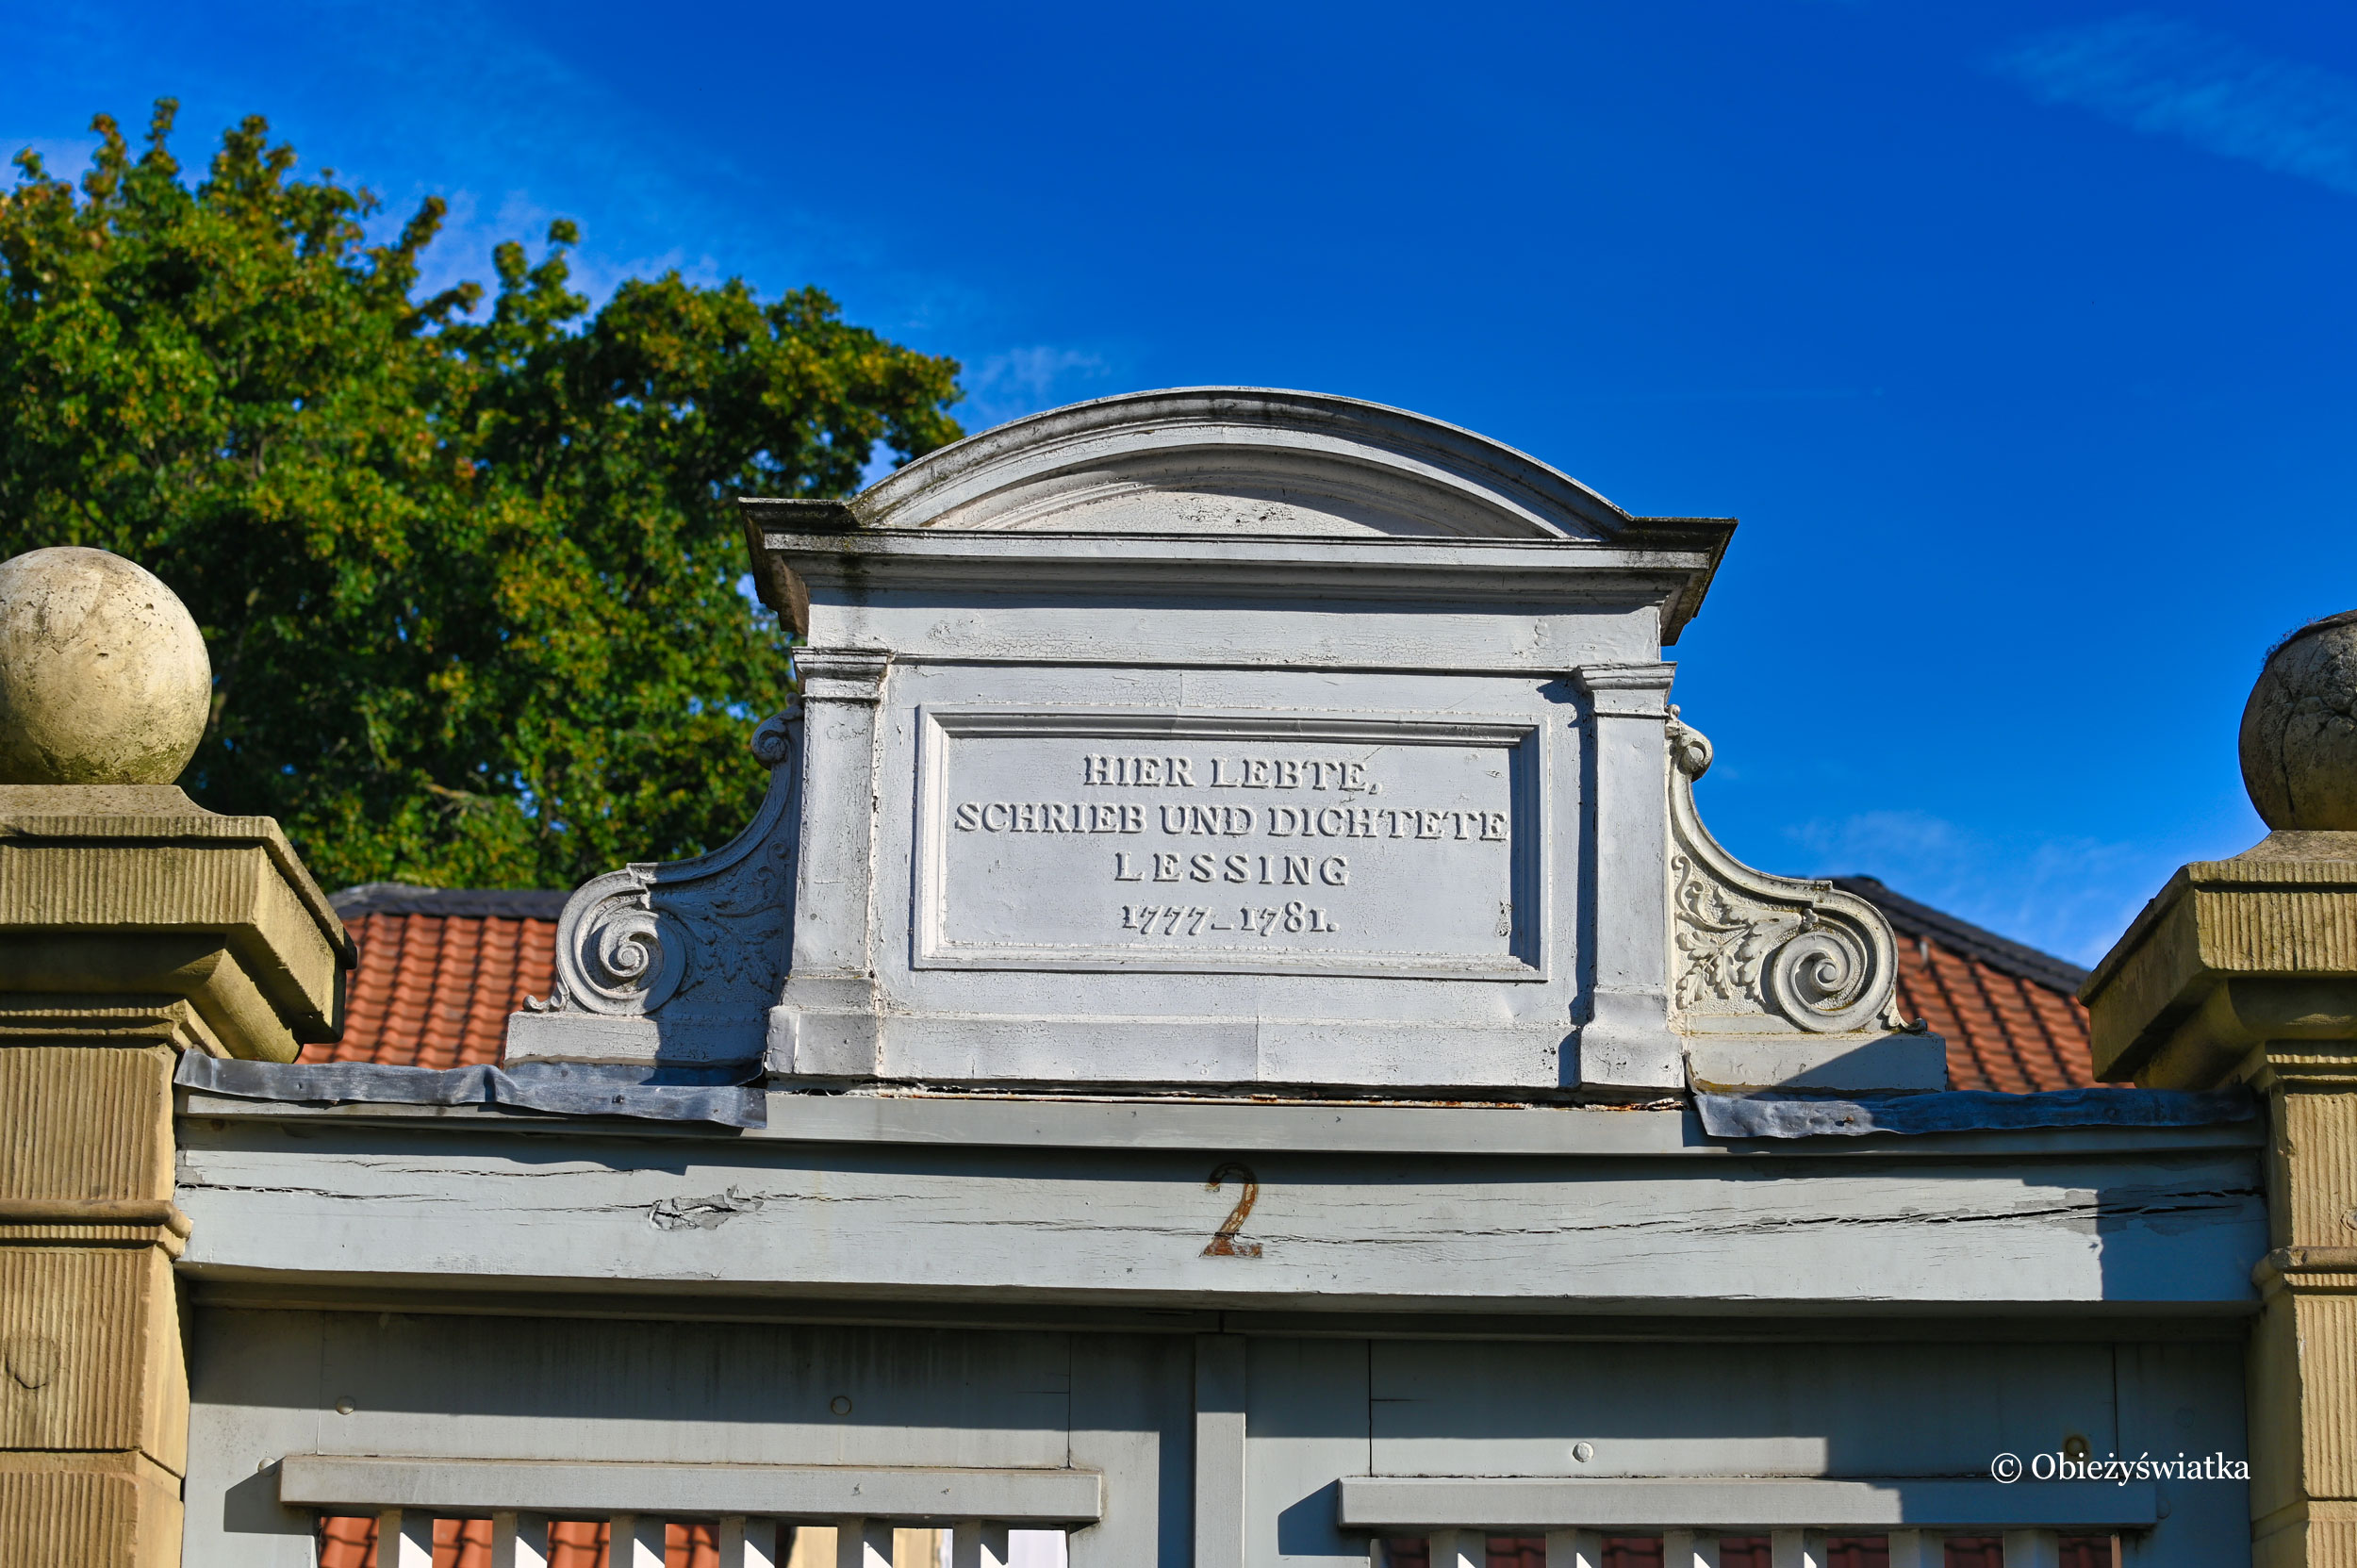 Pamiątkowy napis do domu, w którym mieszkał i tworzył Lessing, Wolfenbüttel, Niemcy